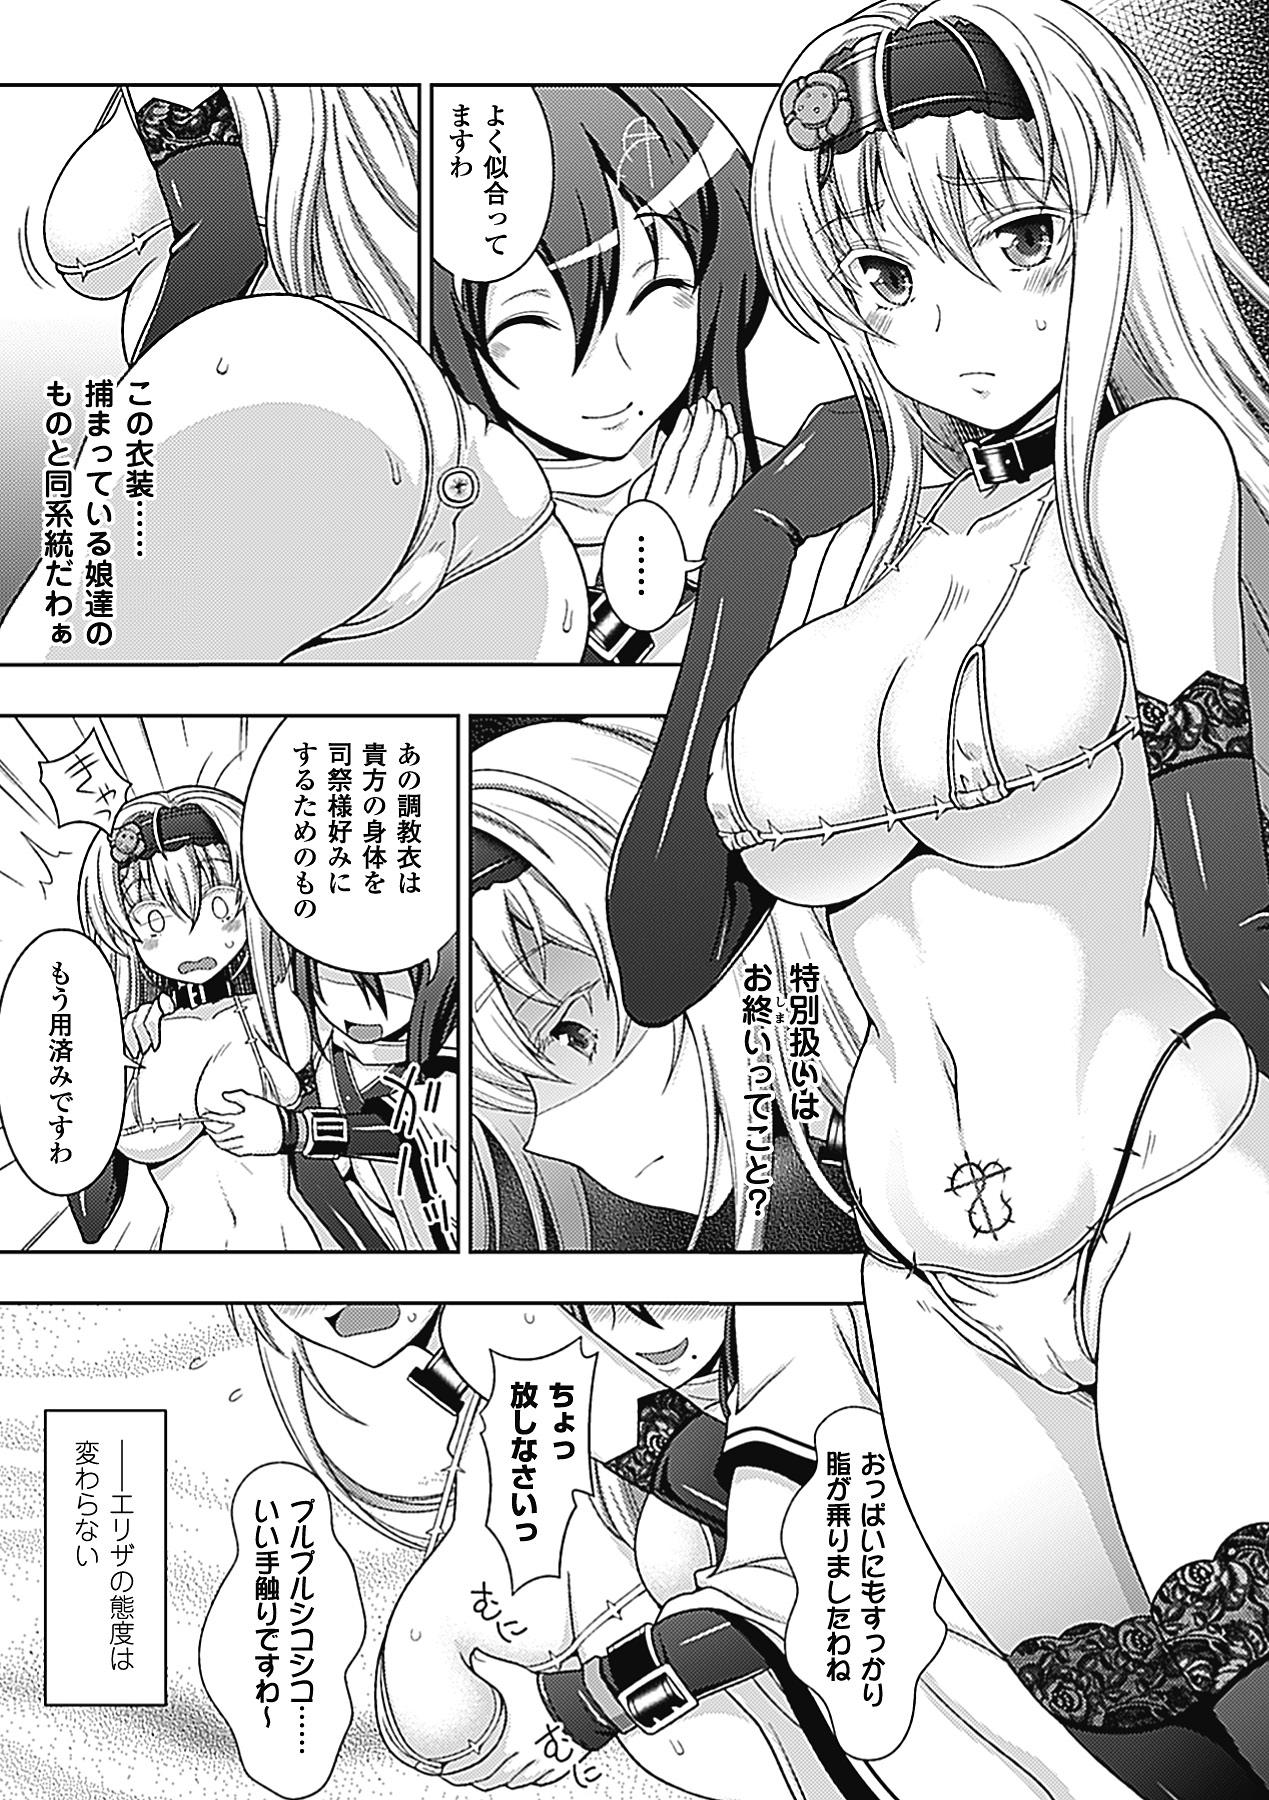 Sixtynine Megami Crisis 2 - Taimanin asagi Buttplug - Page 8